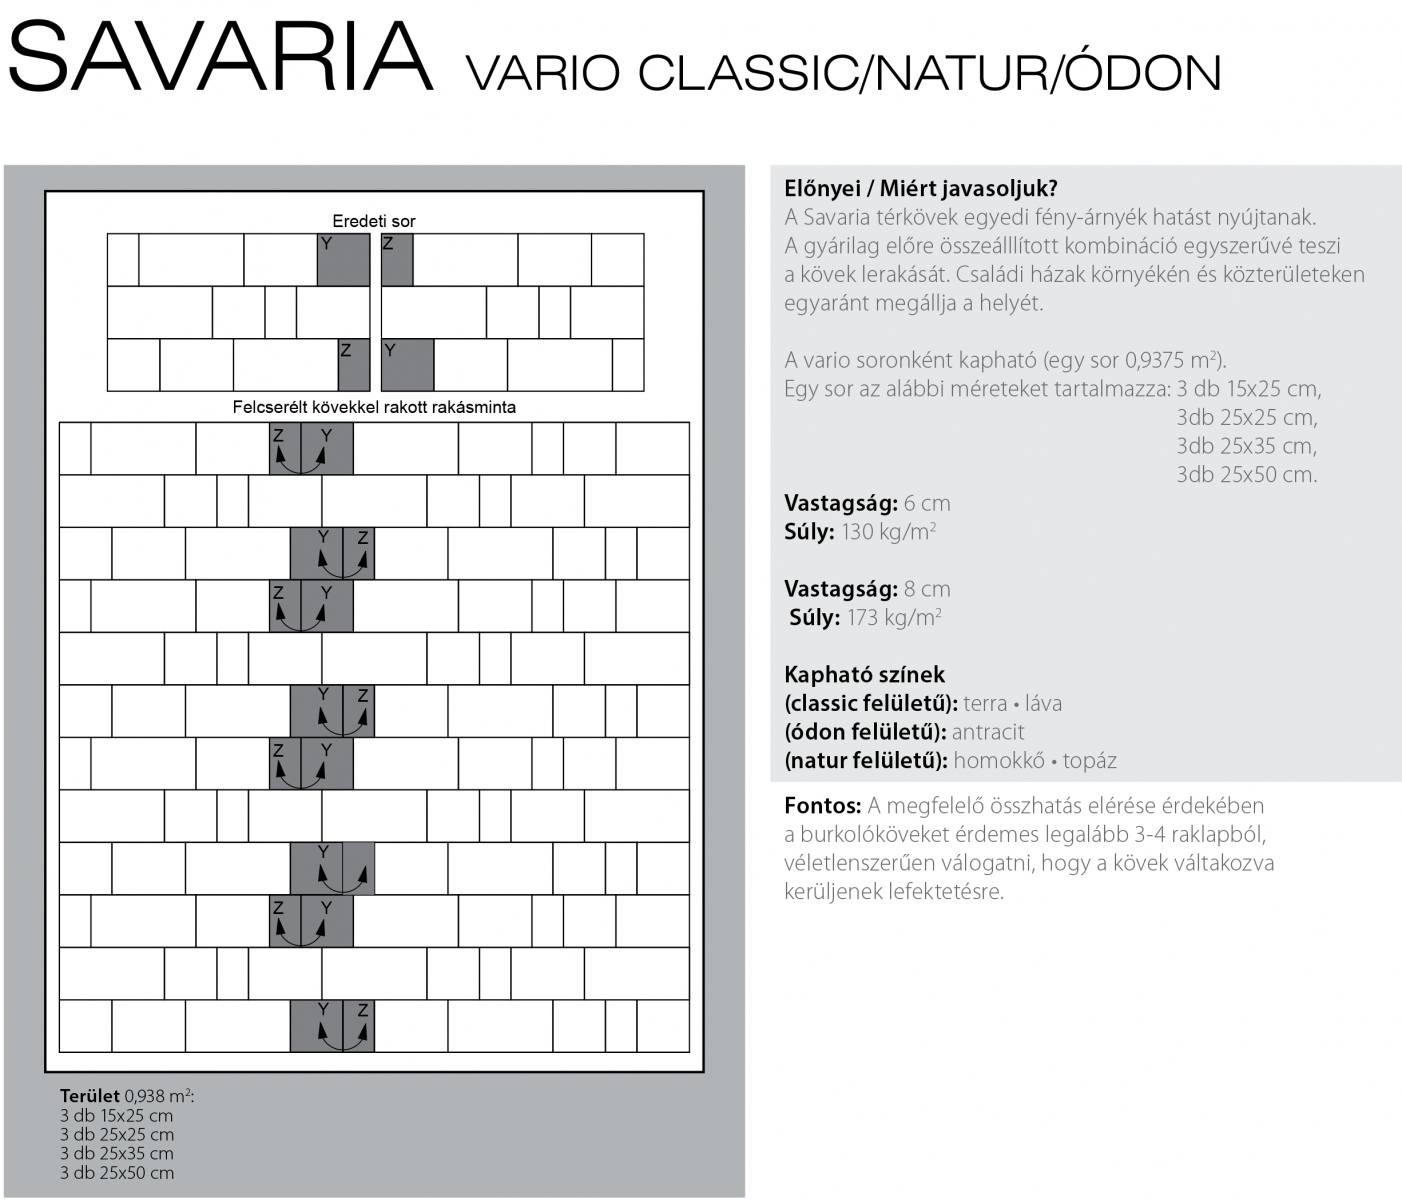 Savaria Classic Vario technikai információi